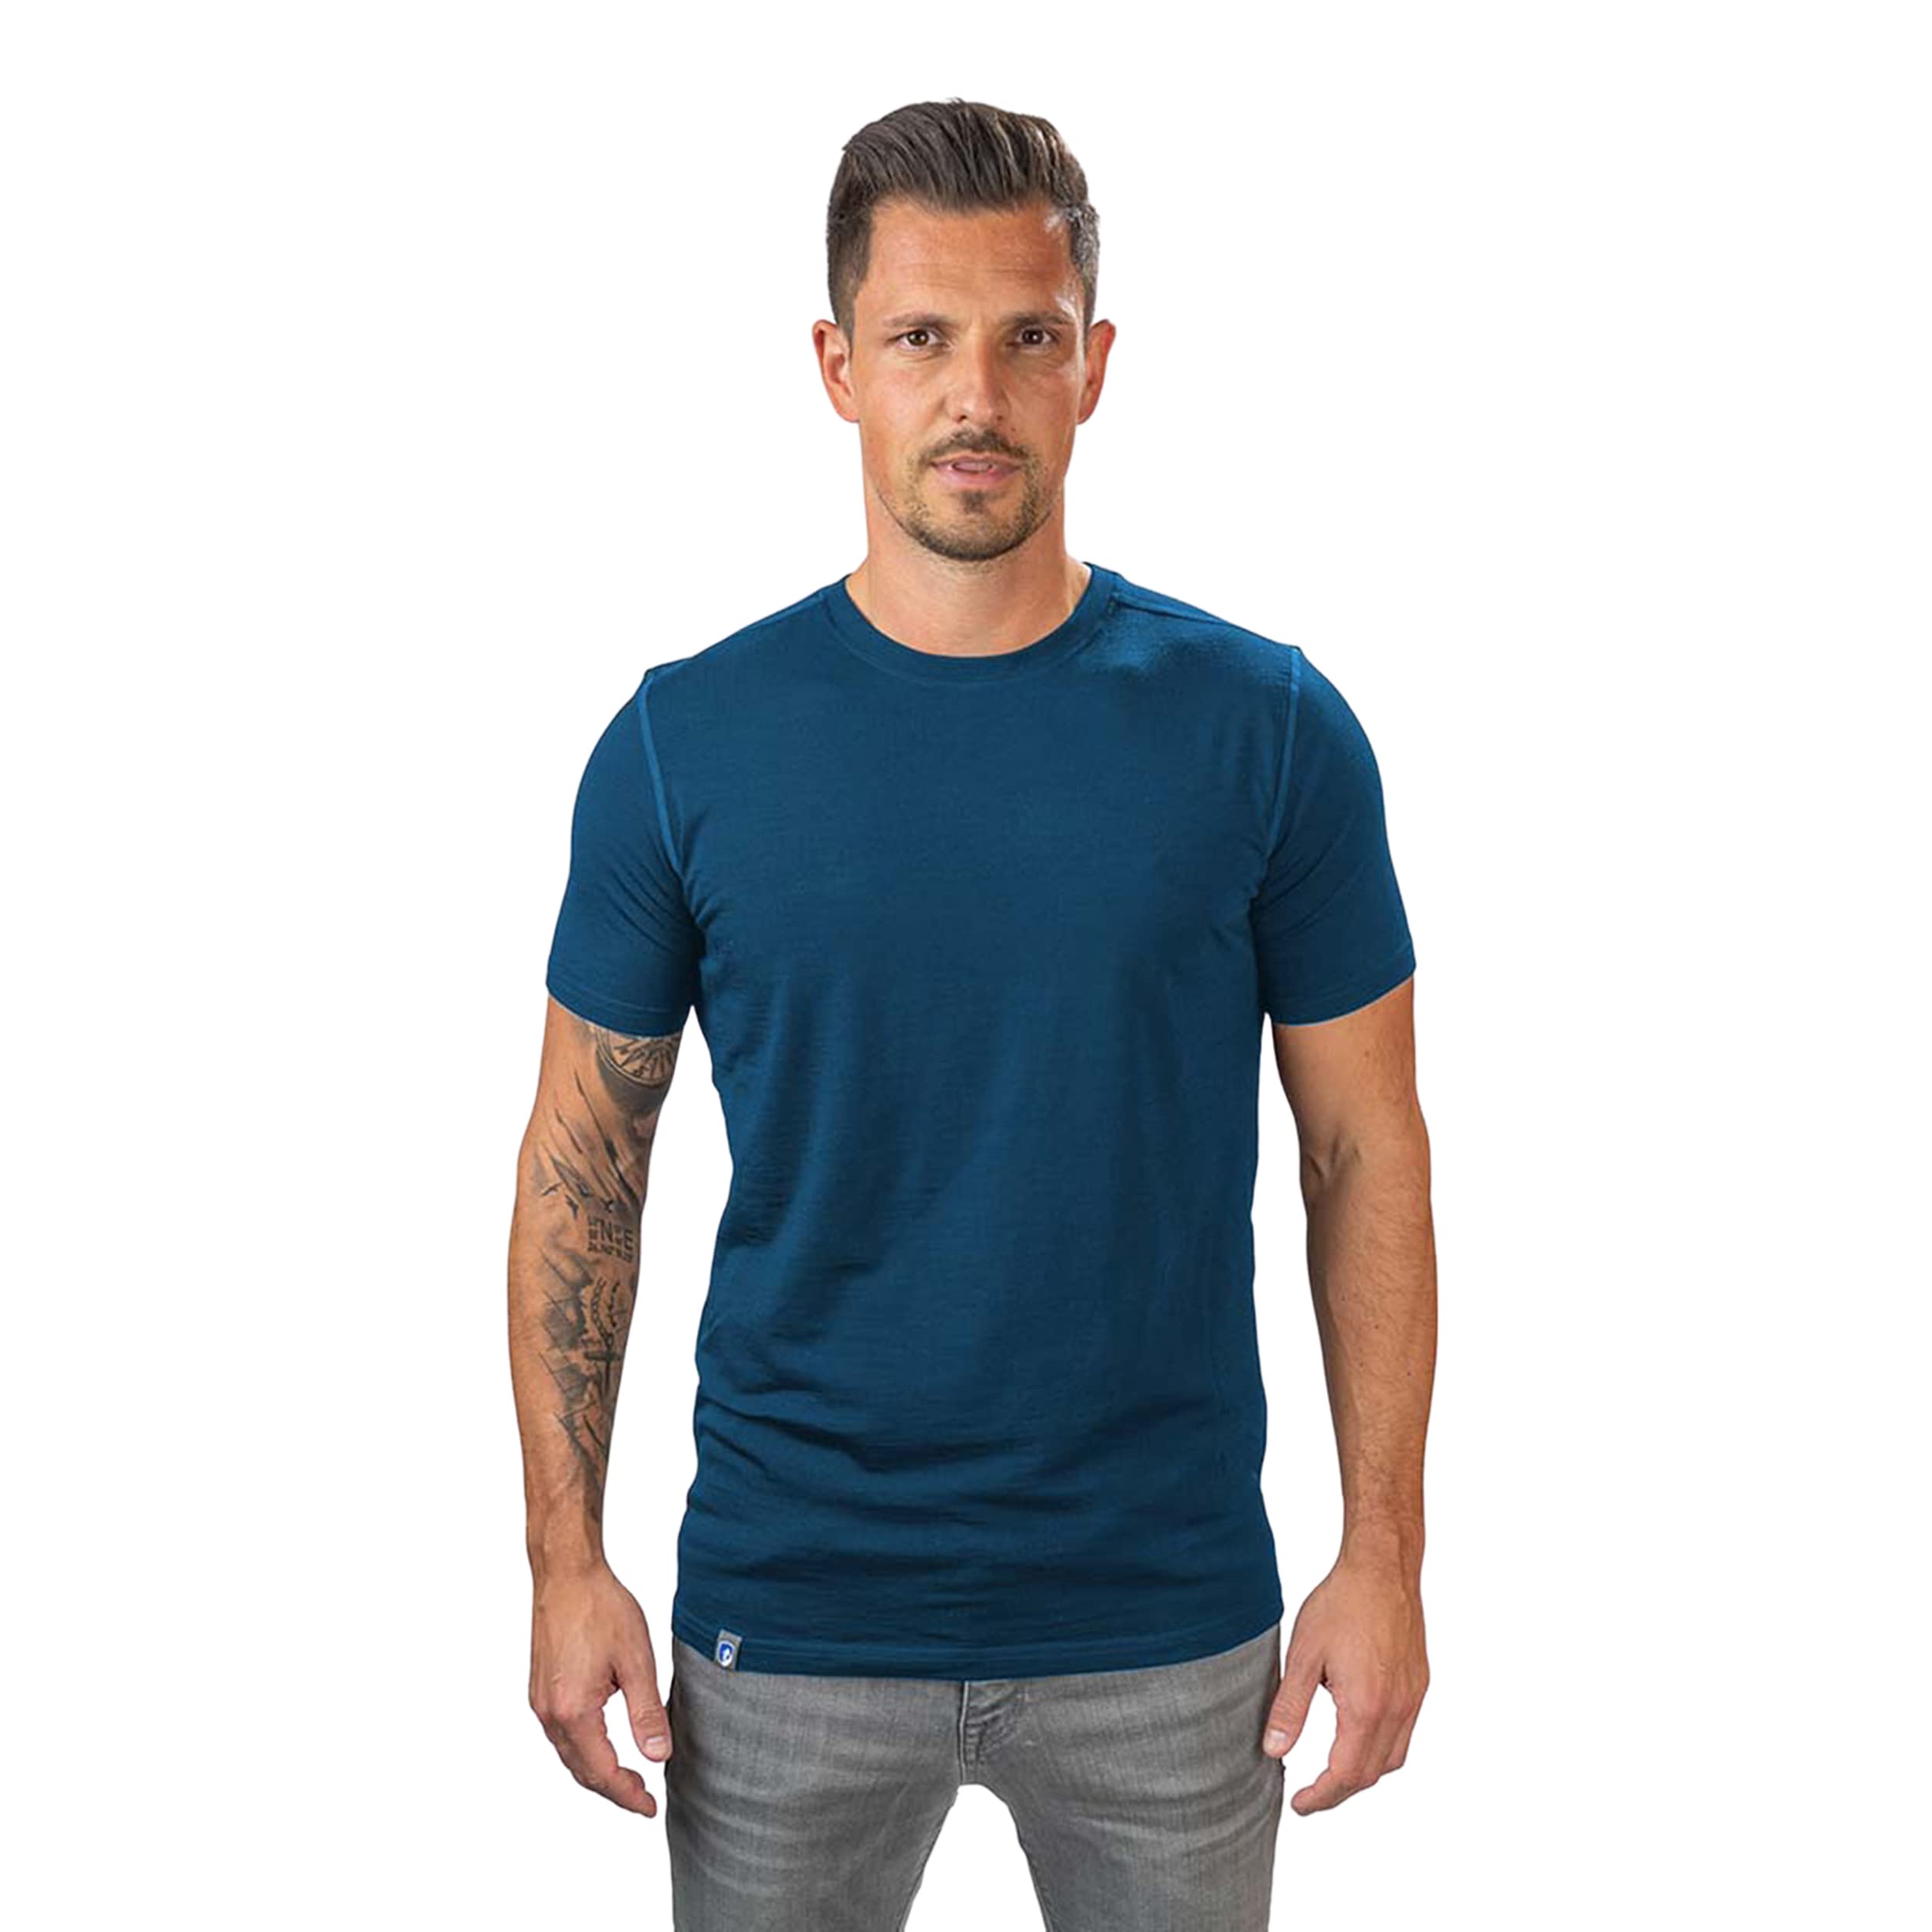 ALPIN LOACKER Merino Shirt Herren - Premium Merino Tshirt Herren Kurzarm I Thermo Oberteil Männer und Funktionsshirt für Outdoor I Merino Unterwäsche Herren, Blau XL